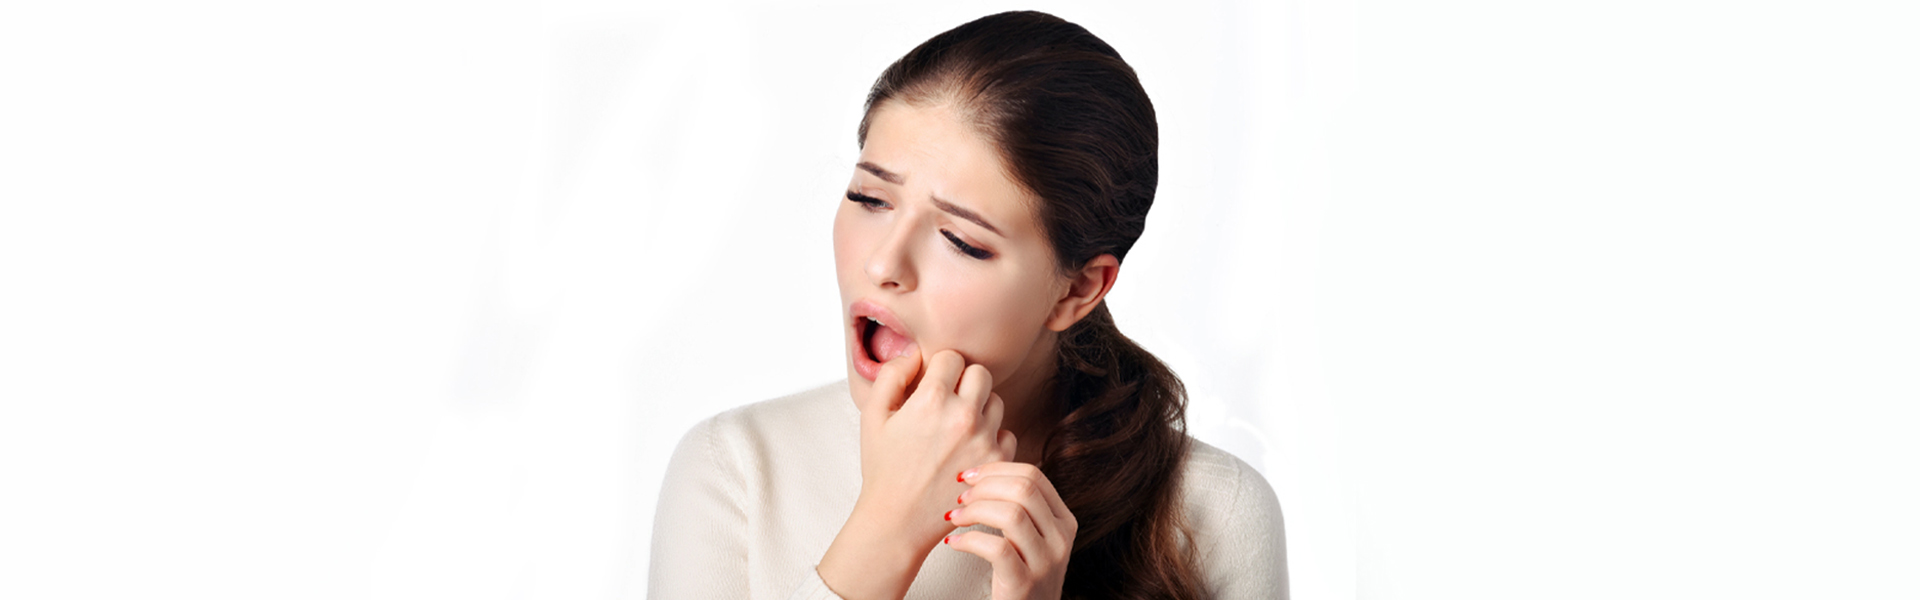 ARESTIN: Gum Disease Treatment